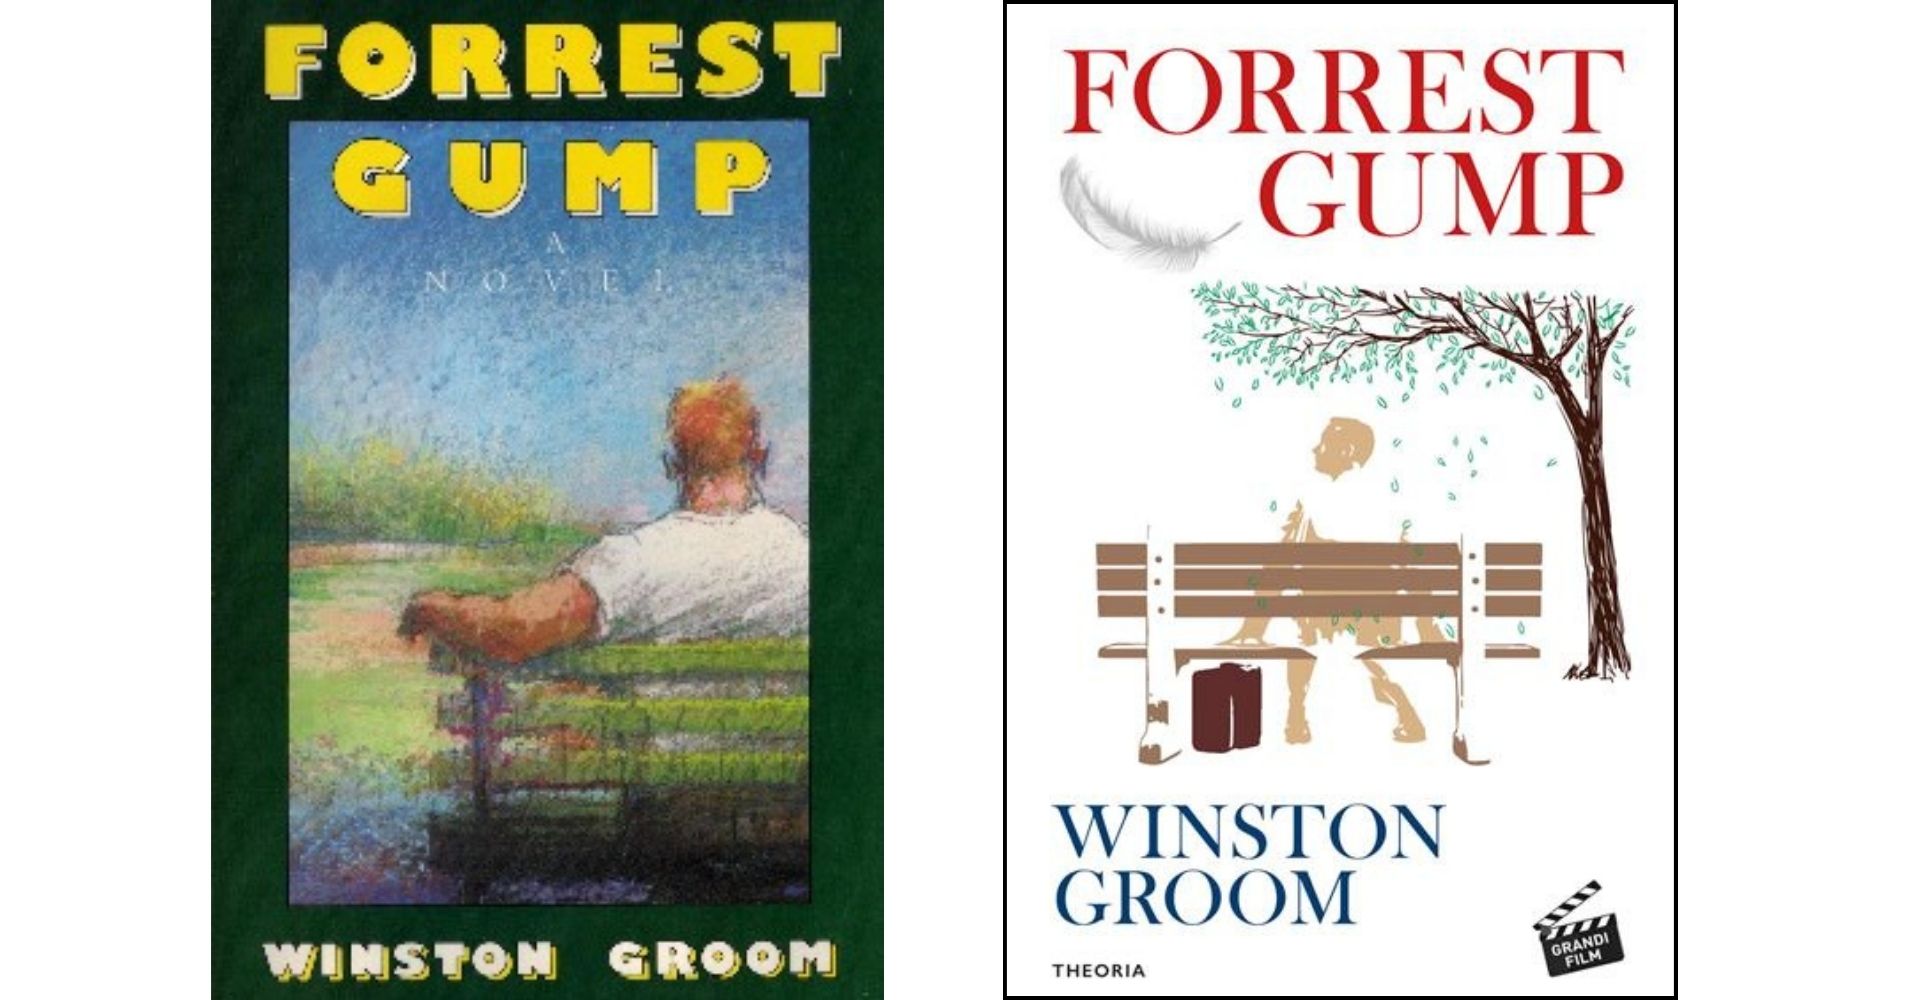 La copertina della prima edizione americana di Forrest Gump e la copertina dell'attuale edizione italiana del romanzo